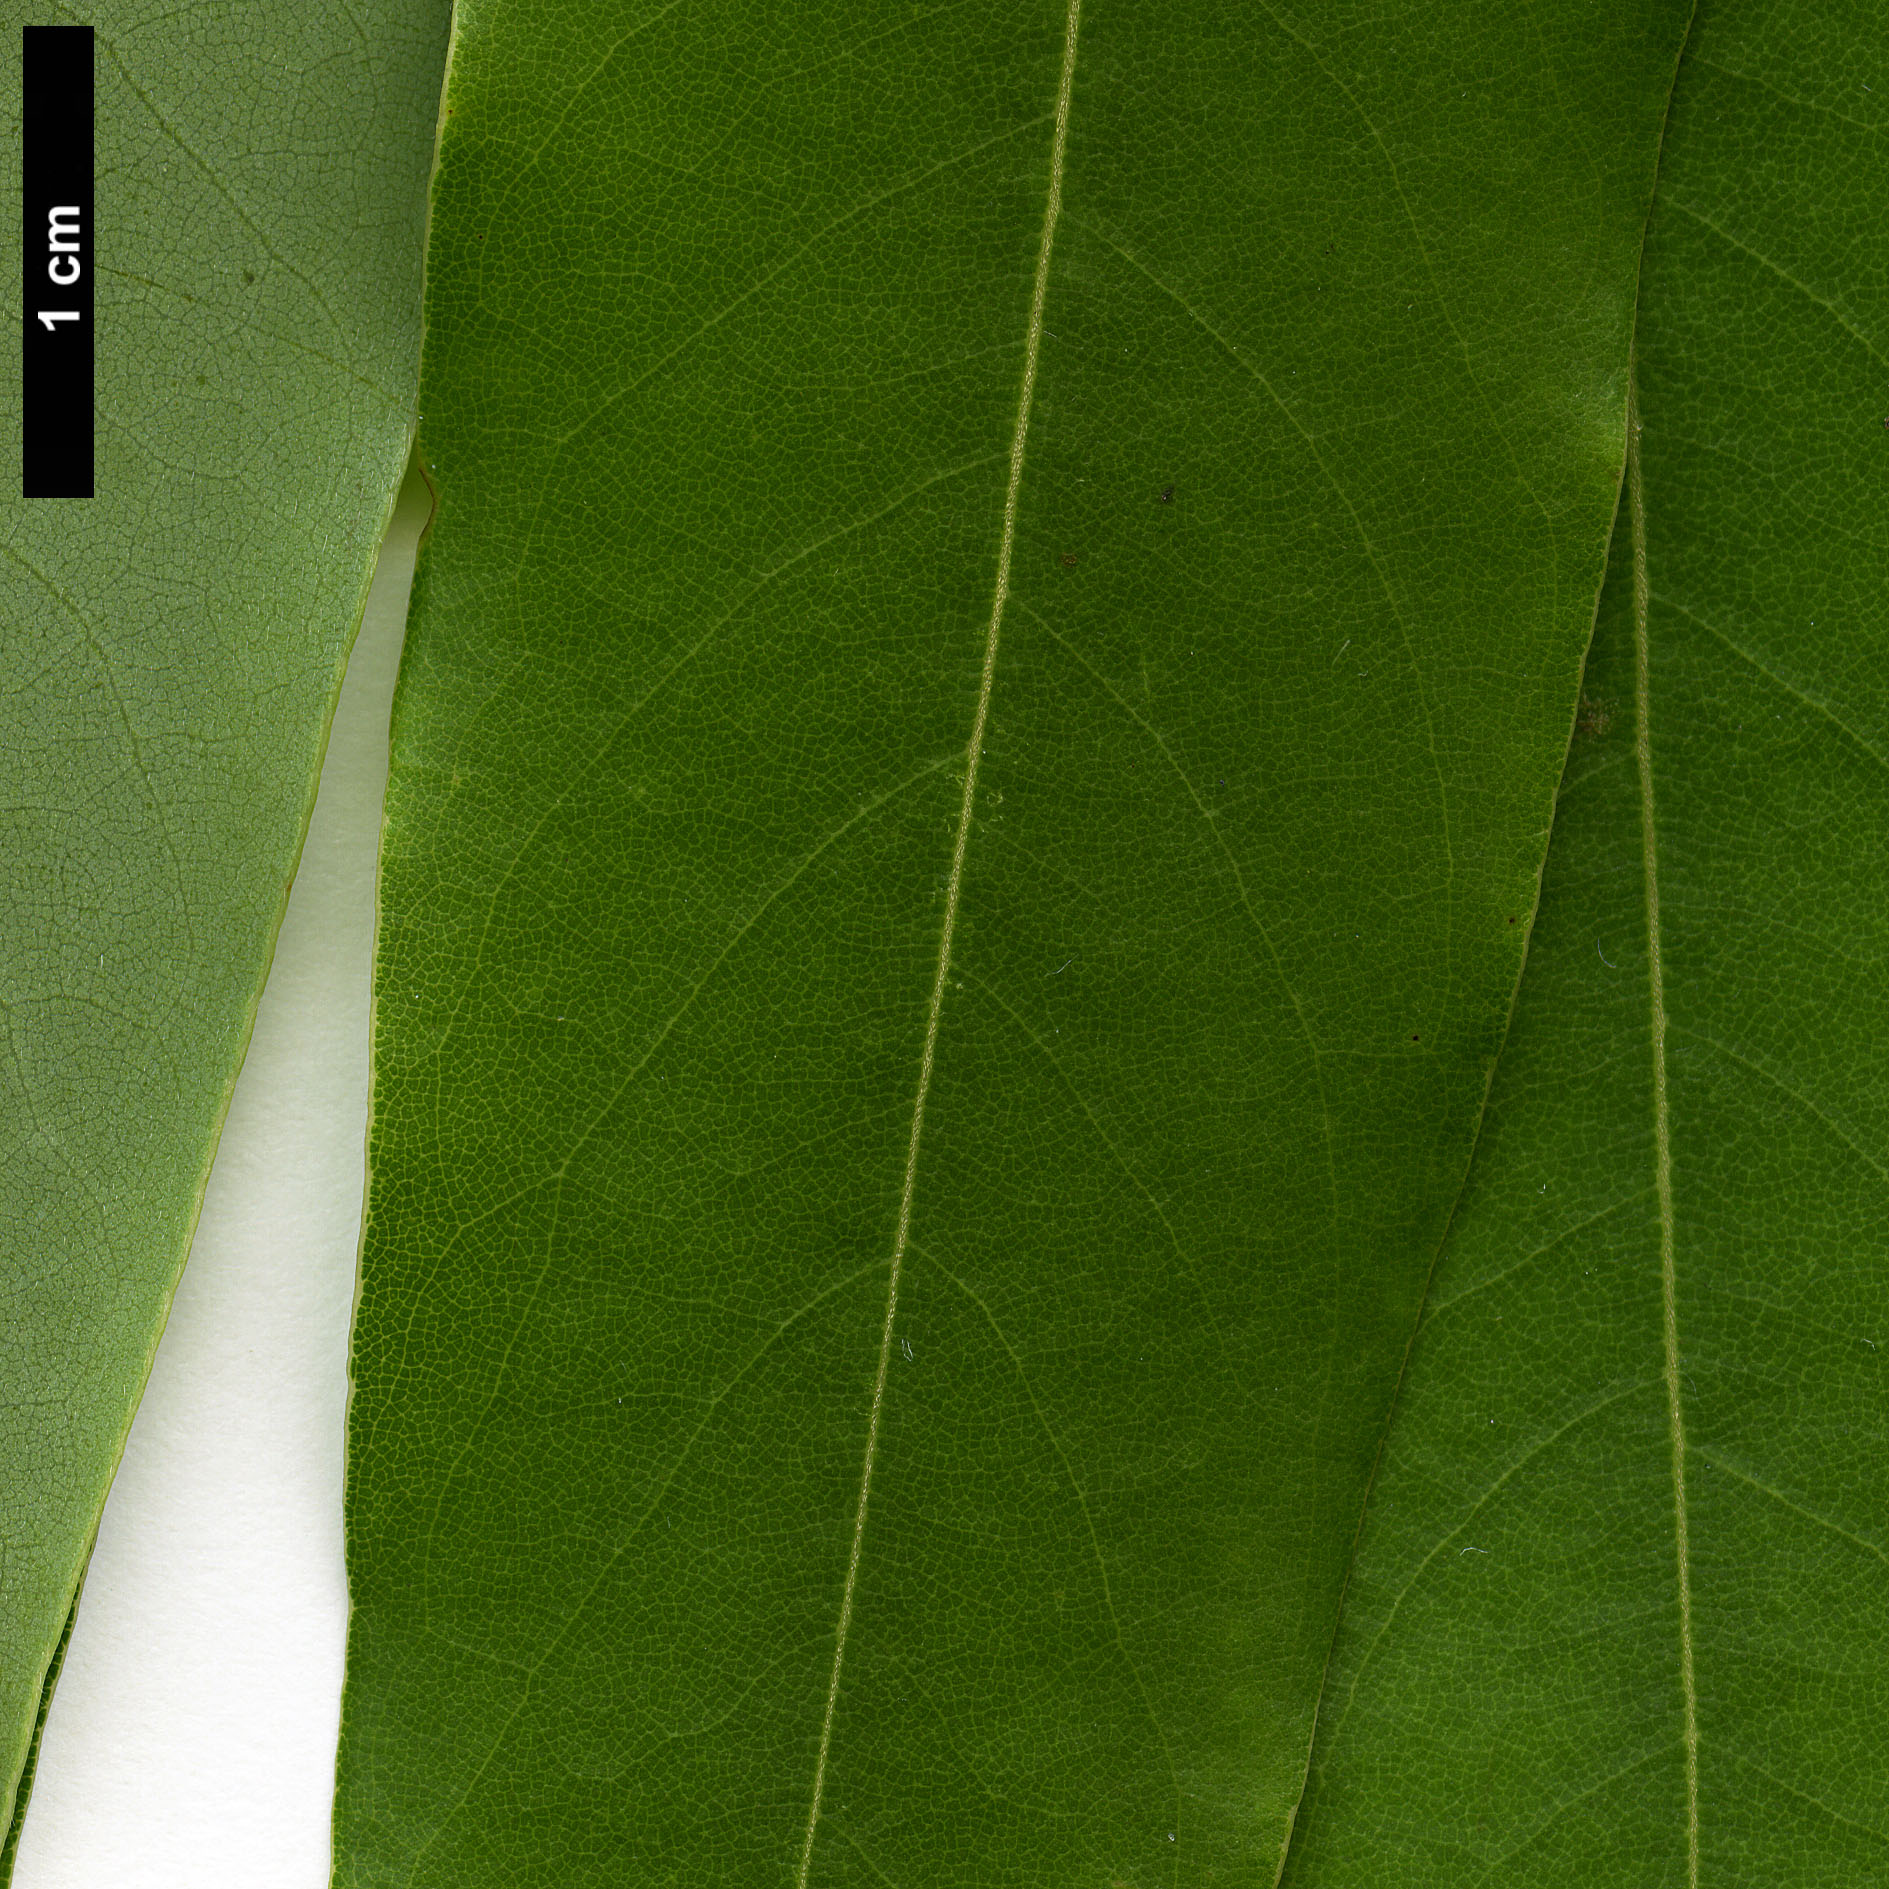 High resolution image: Family: Lauraceae - Genus: Machilus - Taxon: multinervia